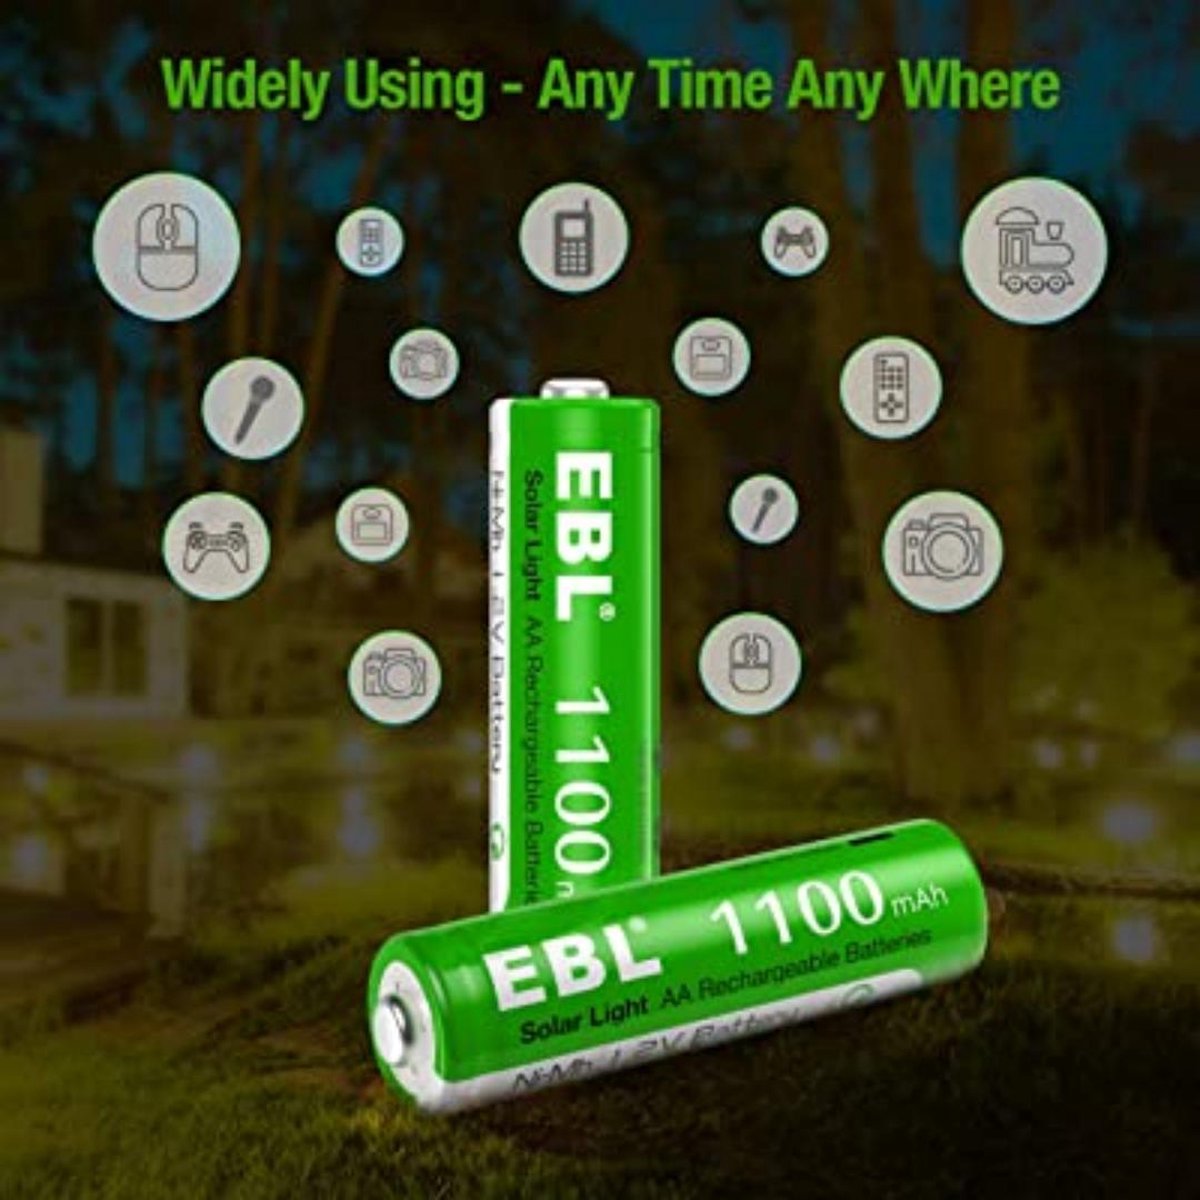 EBL 1100 mAh Solar Light AA HR06 Rechargeable - 8x AA oplaadbare batterijen met Low Self discharge Tech - 1.2V AA-batterijen voor buitenzonne-tuinverlichting -1100mAh hoogwaardige Ni-MH AA-batterij